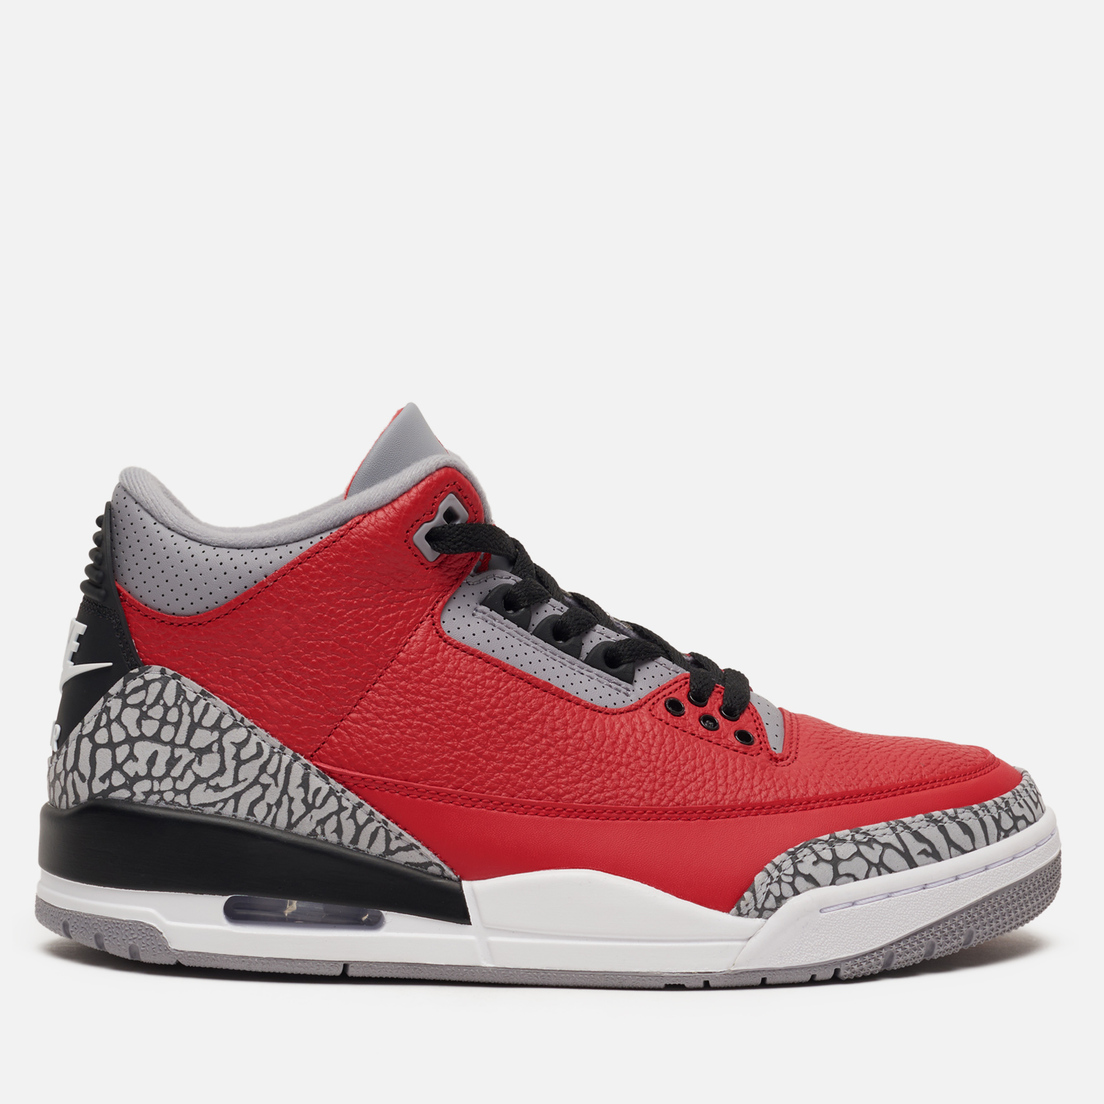 Jordan Air Jordan 3 Retro SE Red Cement 